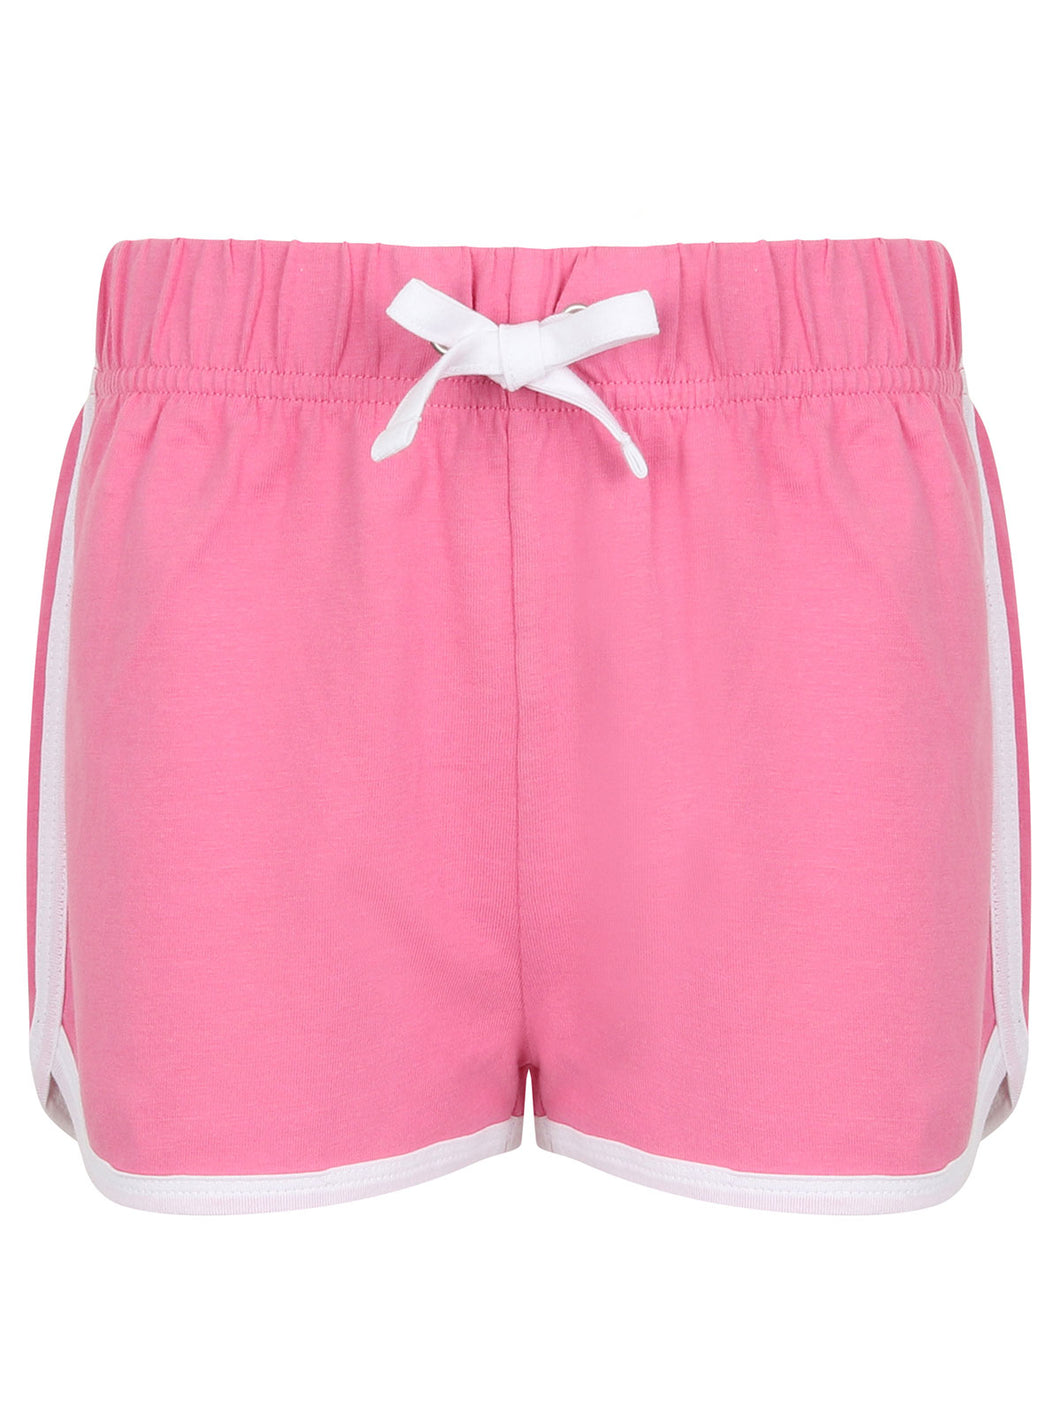 pantaloncino promozionale in cotone WHT-rosa 063724902522173 VAR01